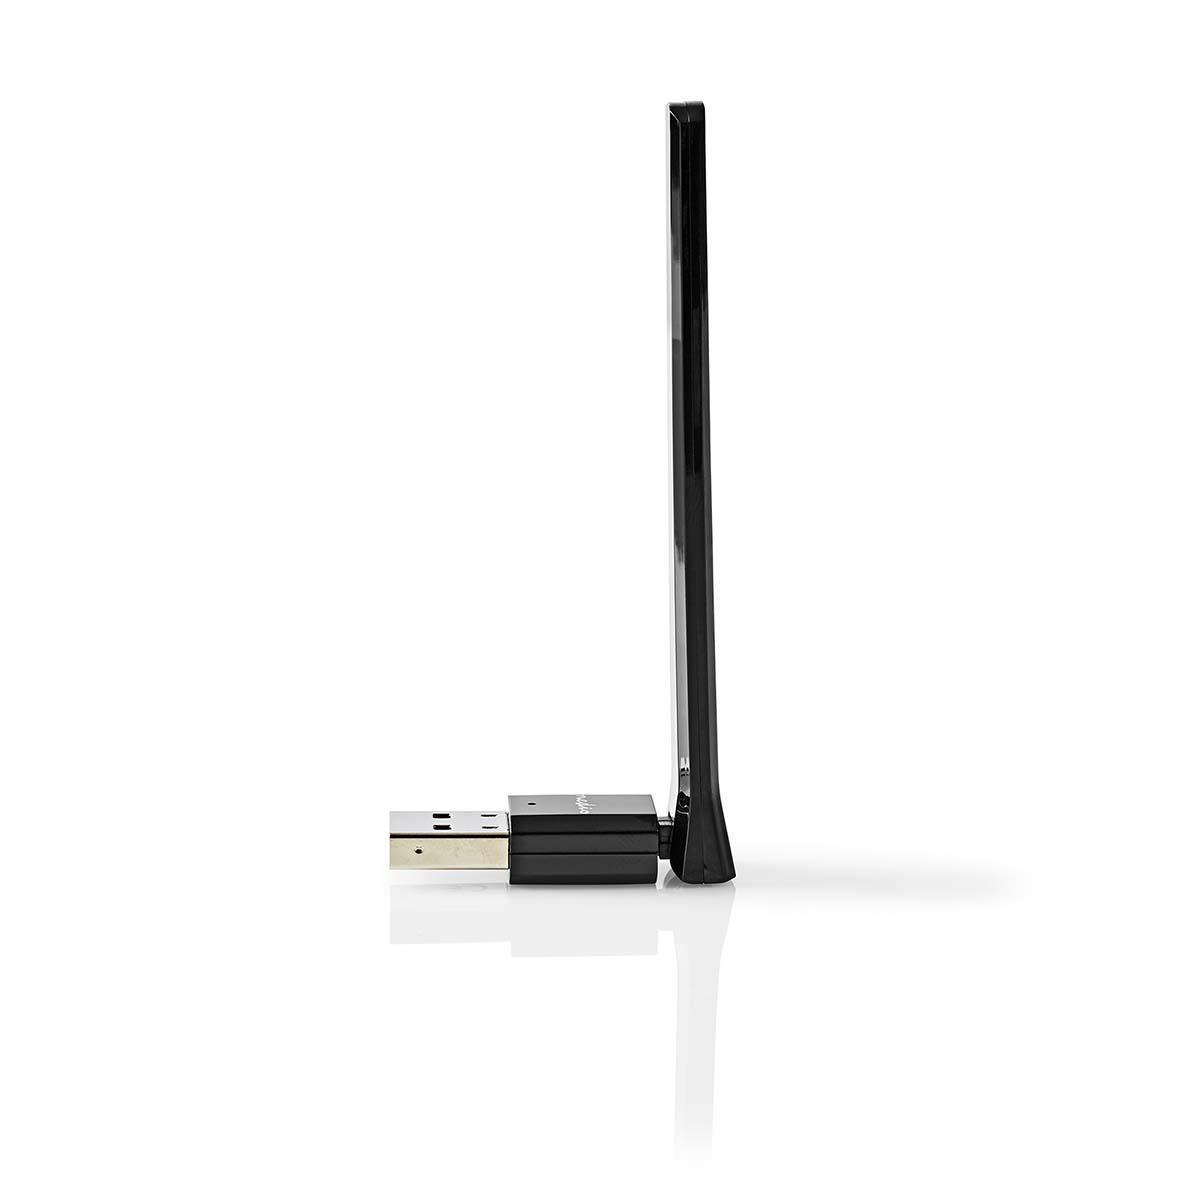 Adaptateur réseau sans fil adaptateur usb wi-fi 2.4/5 ghz (dual band) 600 mbps